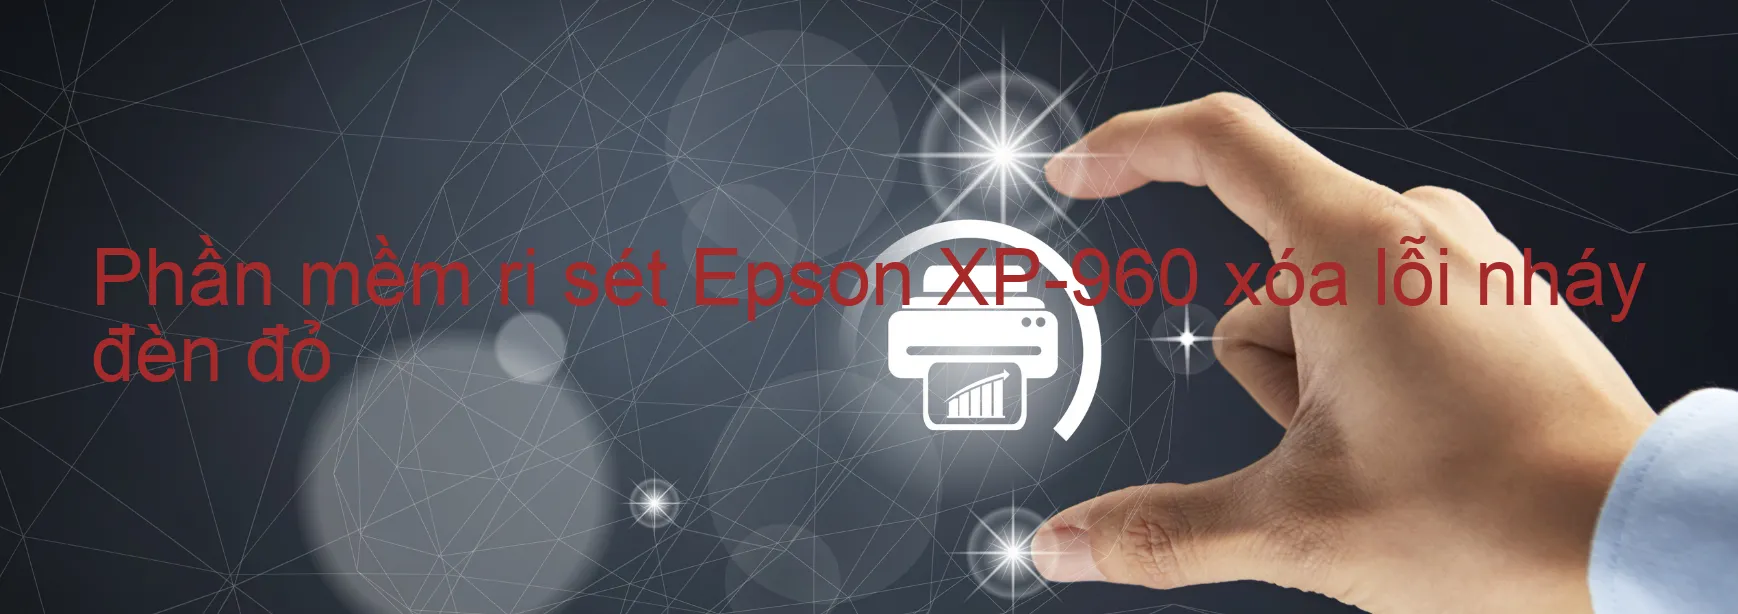 Phần mềm reset Epson XP-960 xóa lỗi nháy đèn đỏ